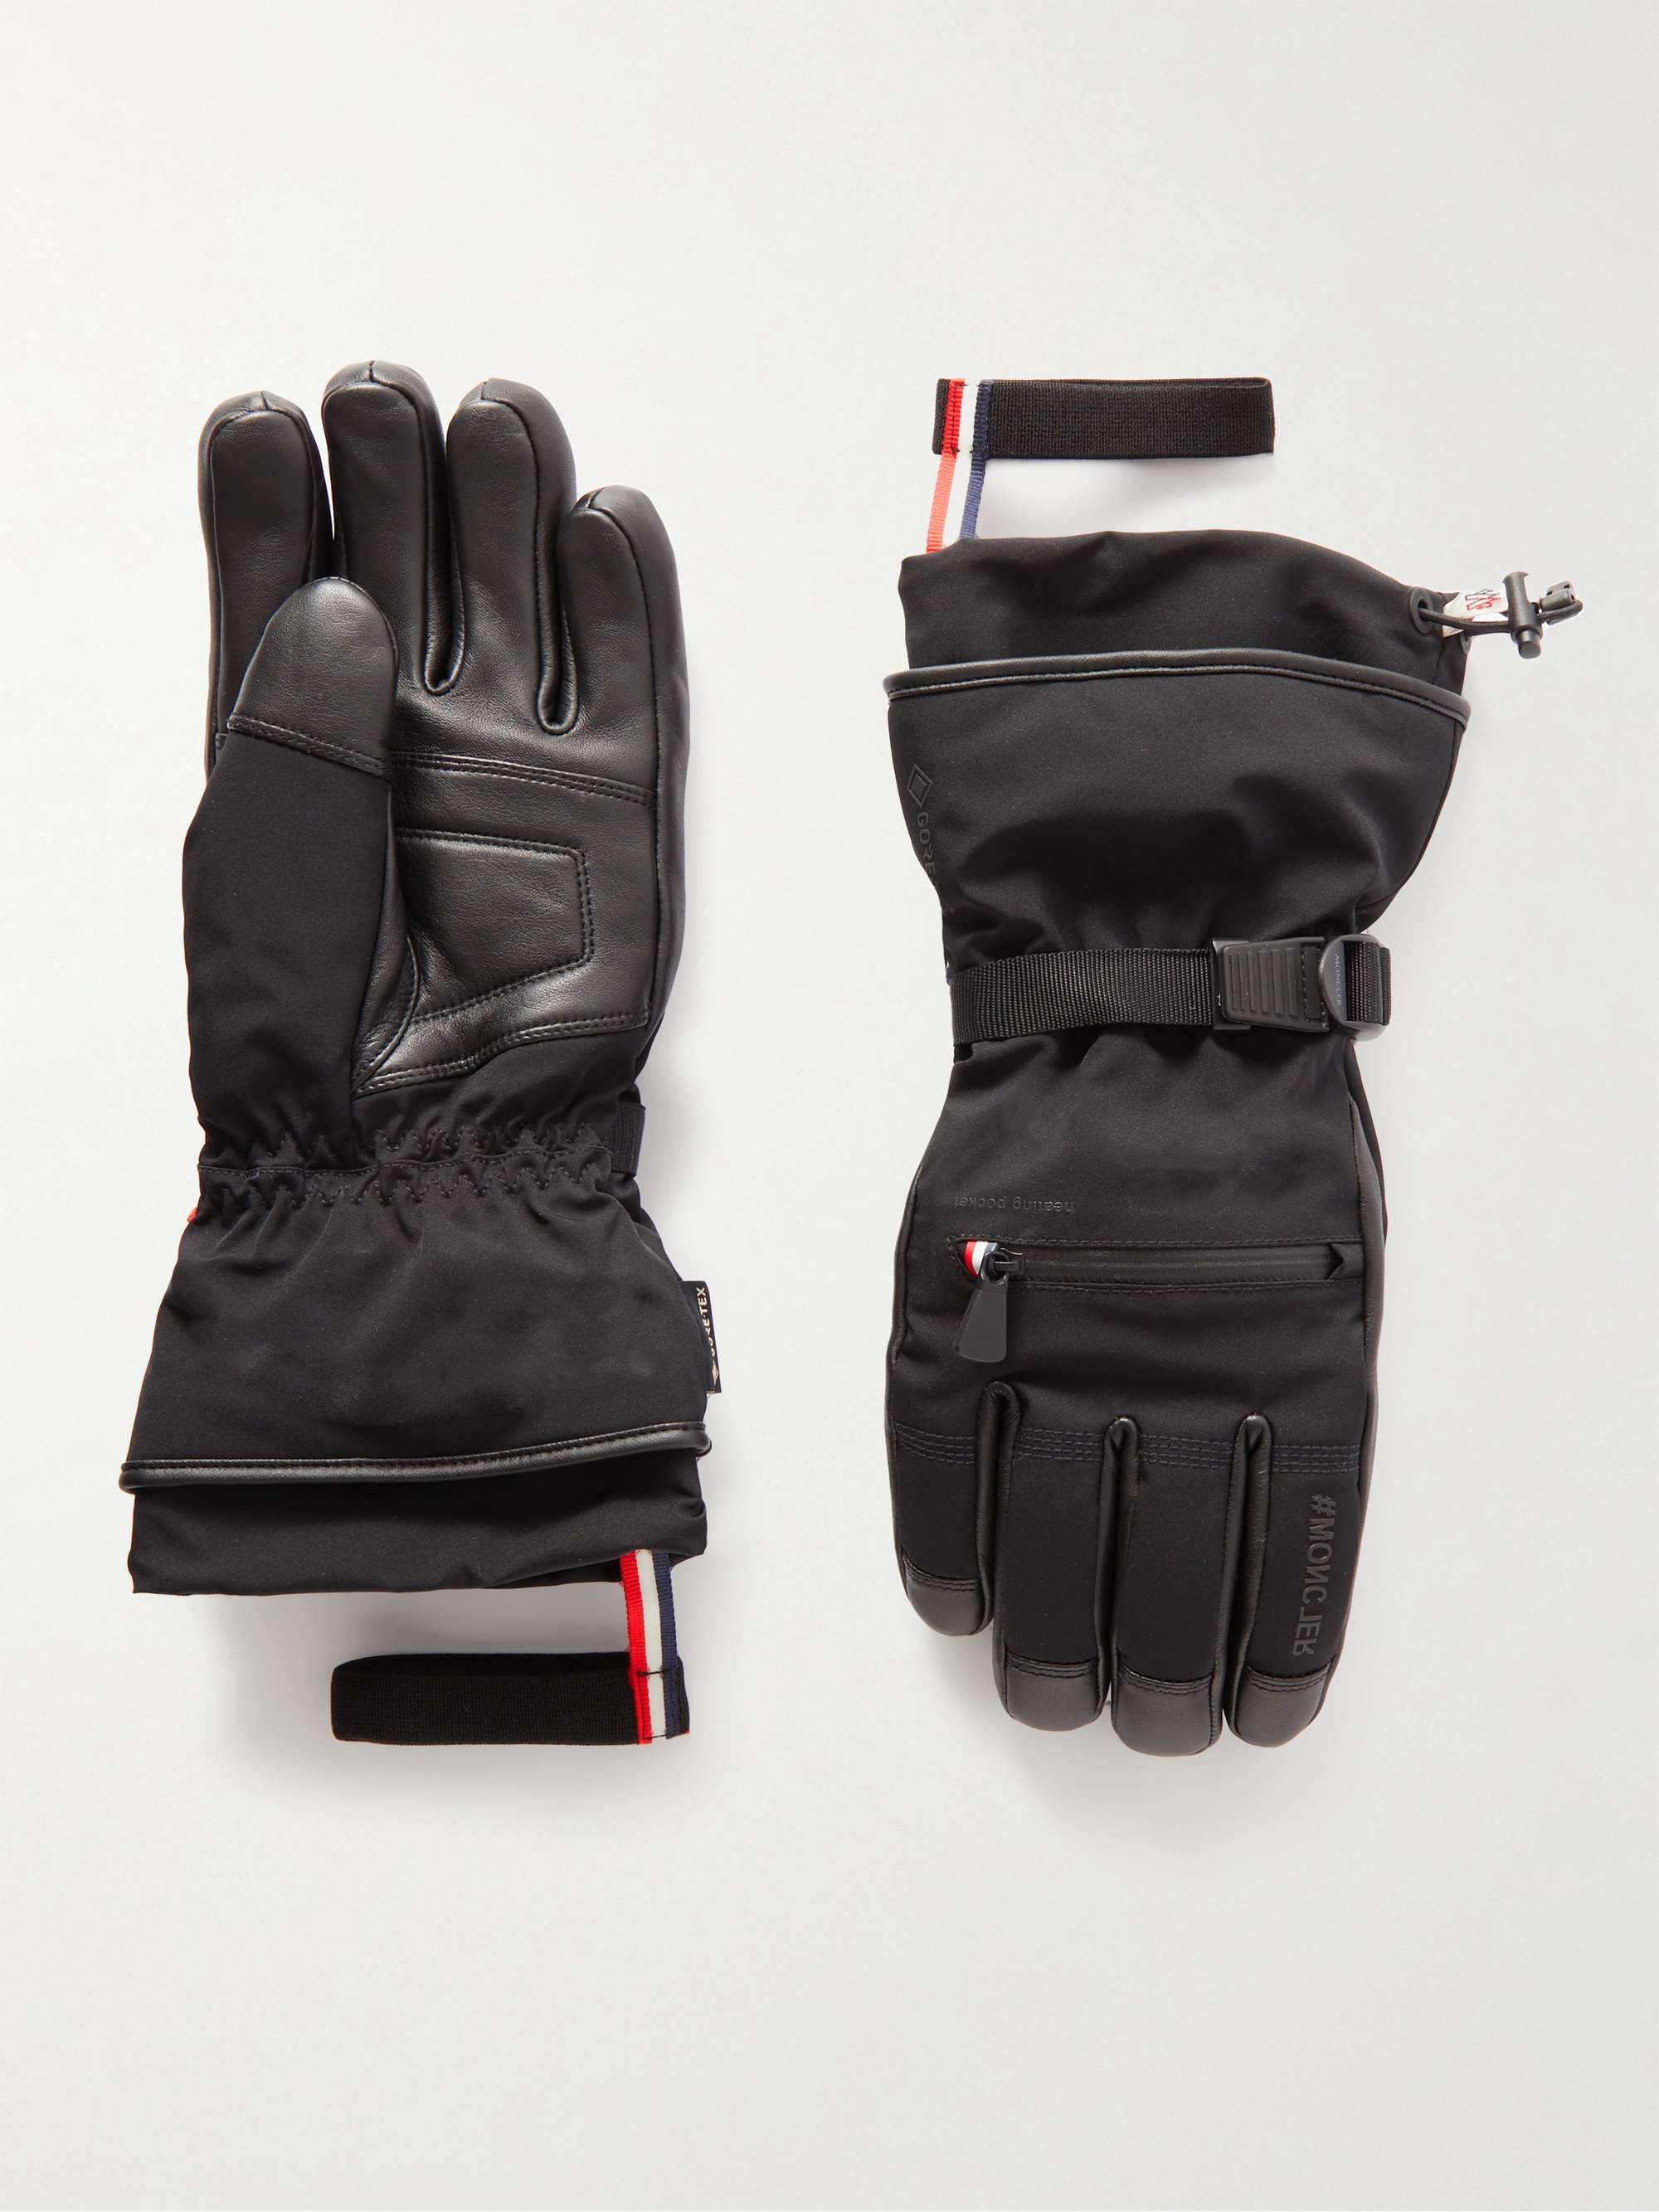 MONCLER GRENOBLE Logo-Appliquéd Leather-Trimmed Ski Gloves | MR PORTER